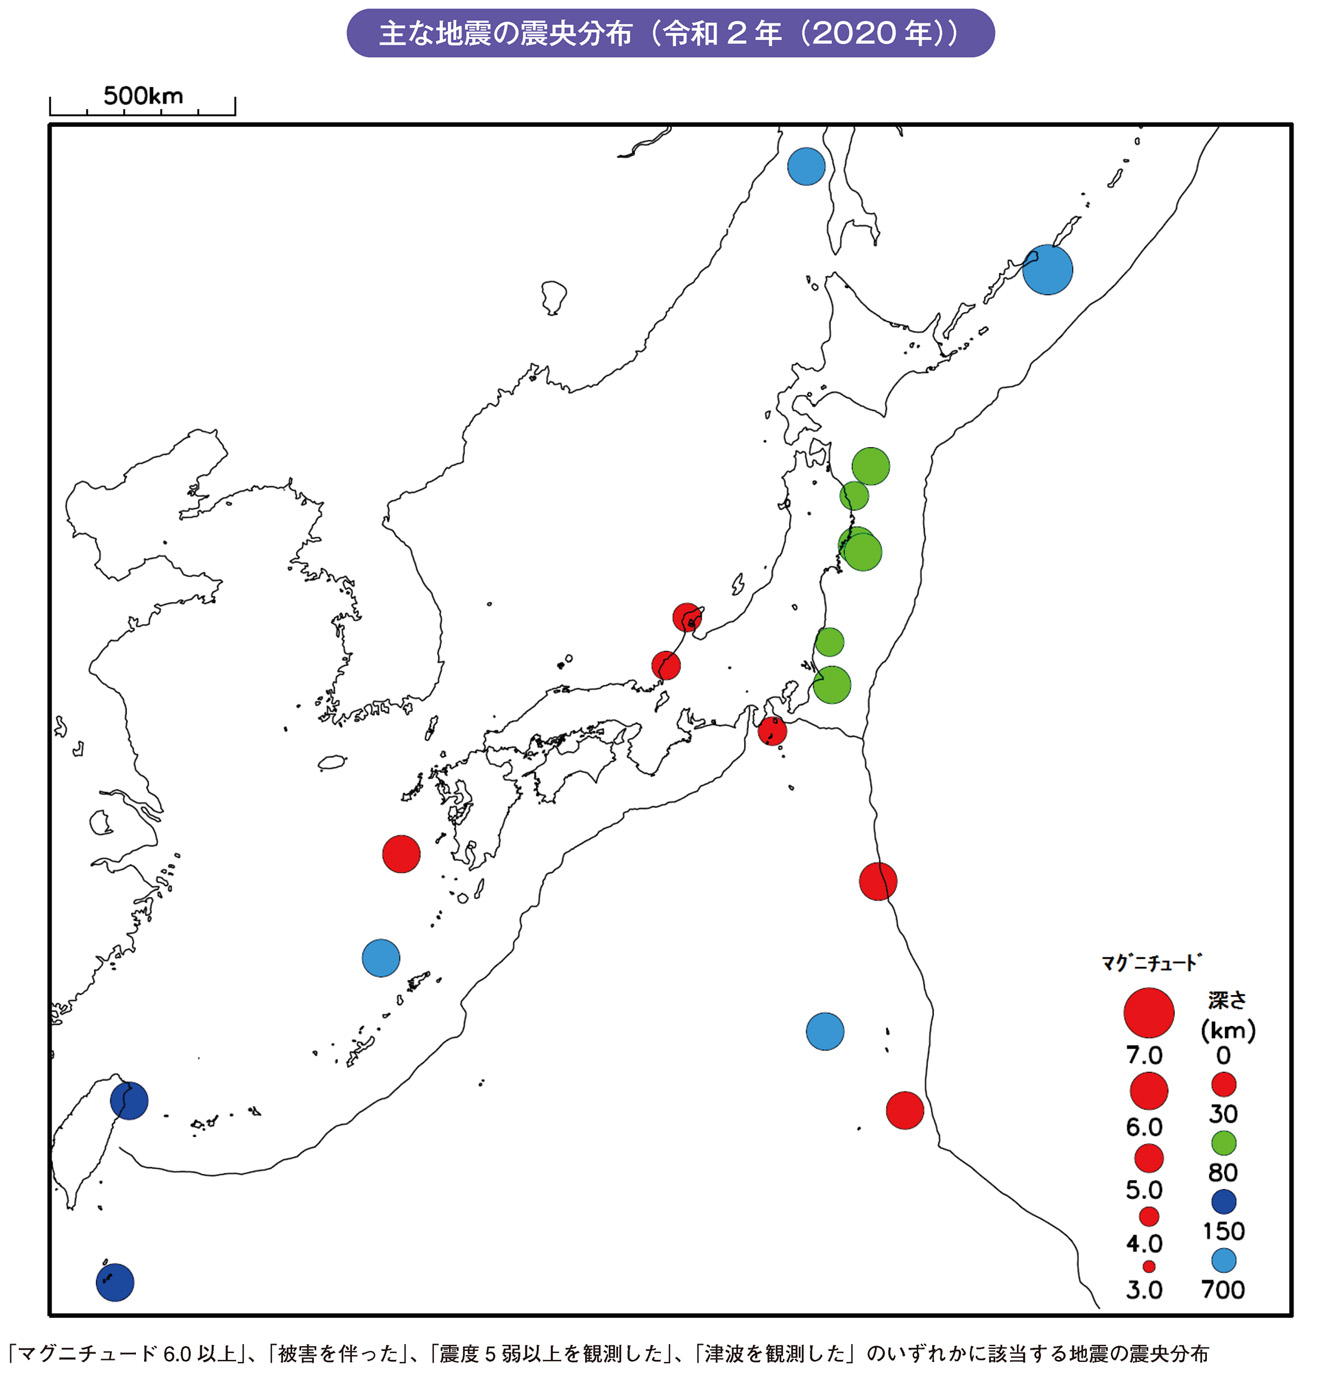 主な地震の震央分布（令和2年（2020年））